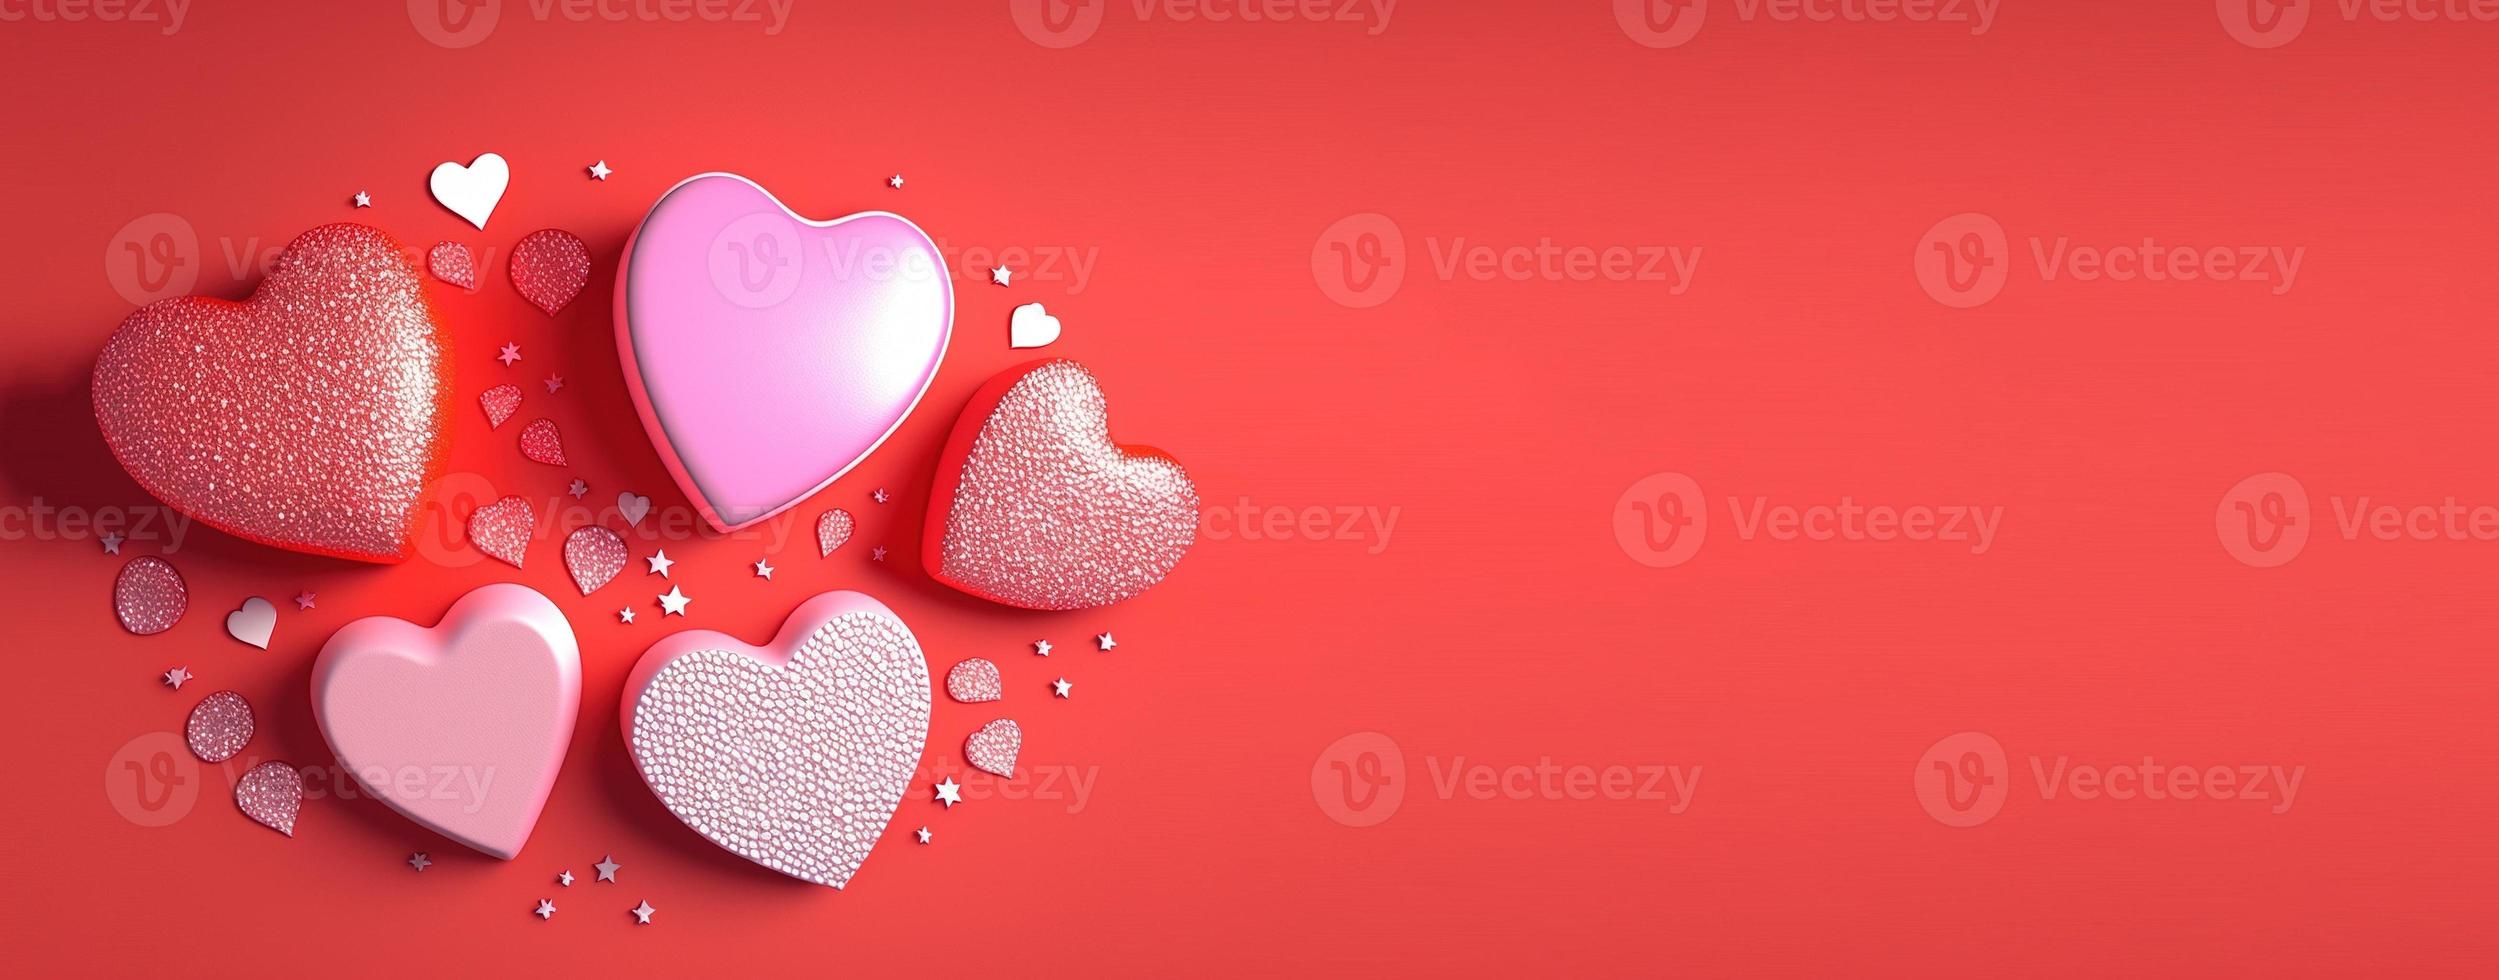 ilustração de coração 3d do dia dos namorados e banner e plano de fundo do tema de cristal de diamante foto